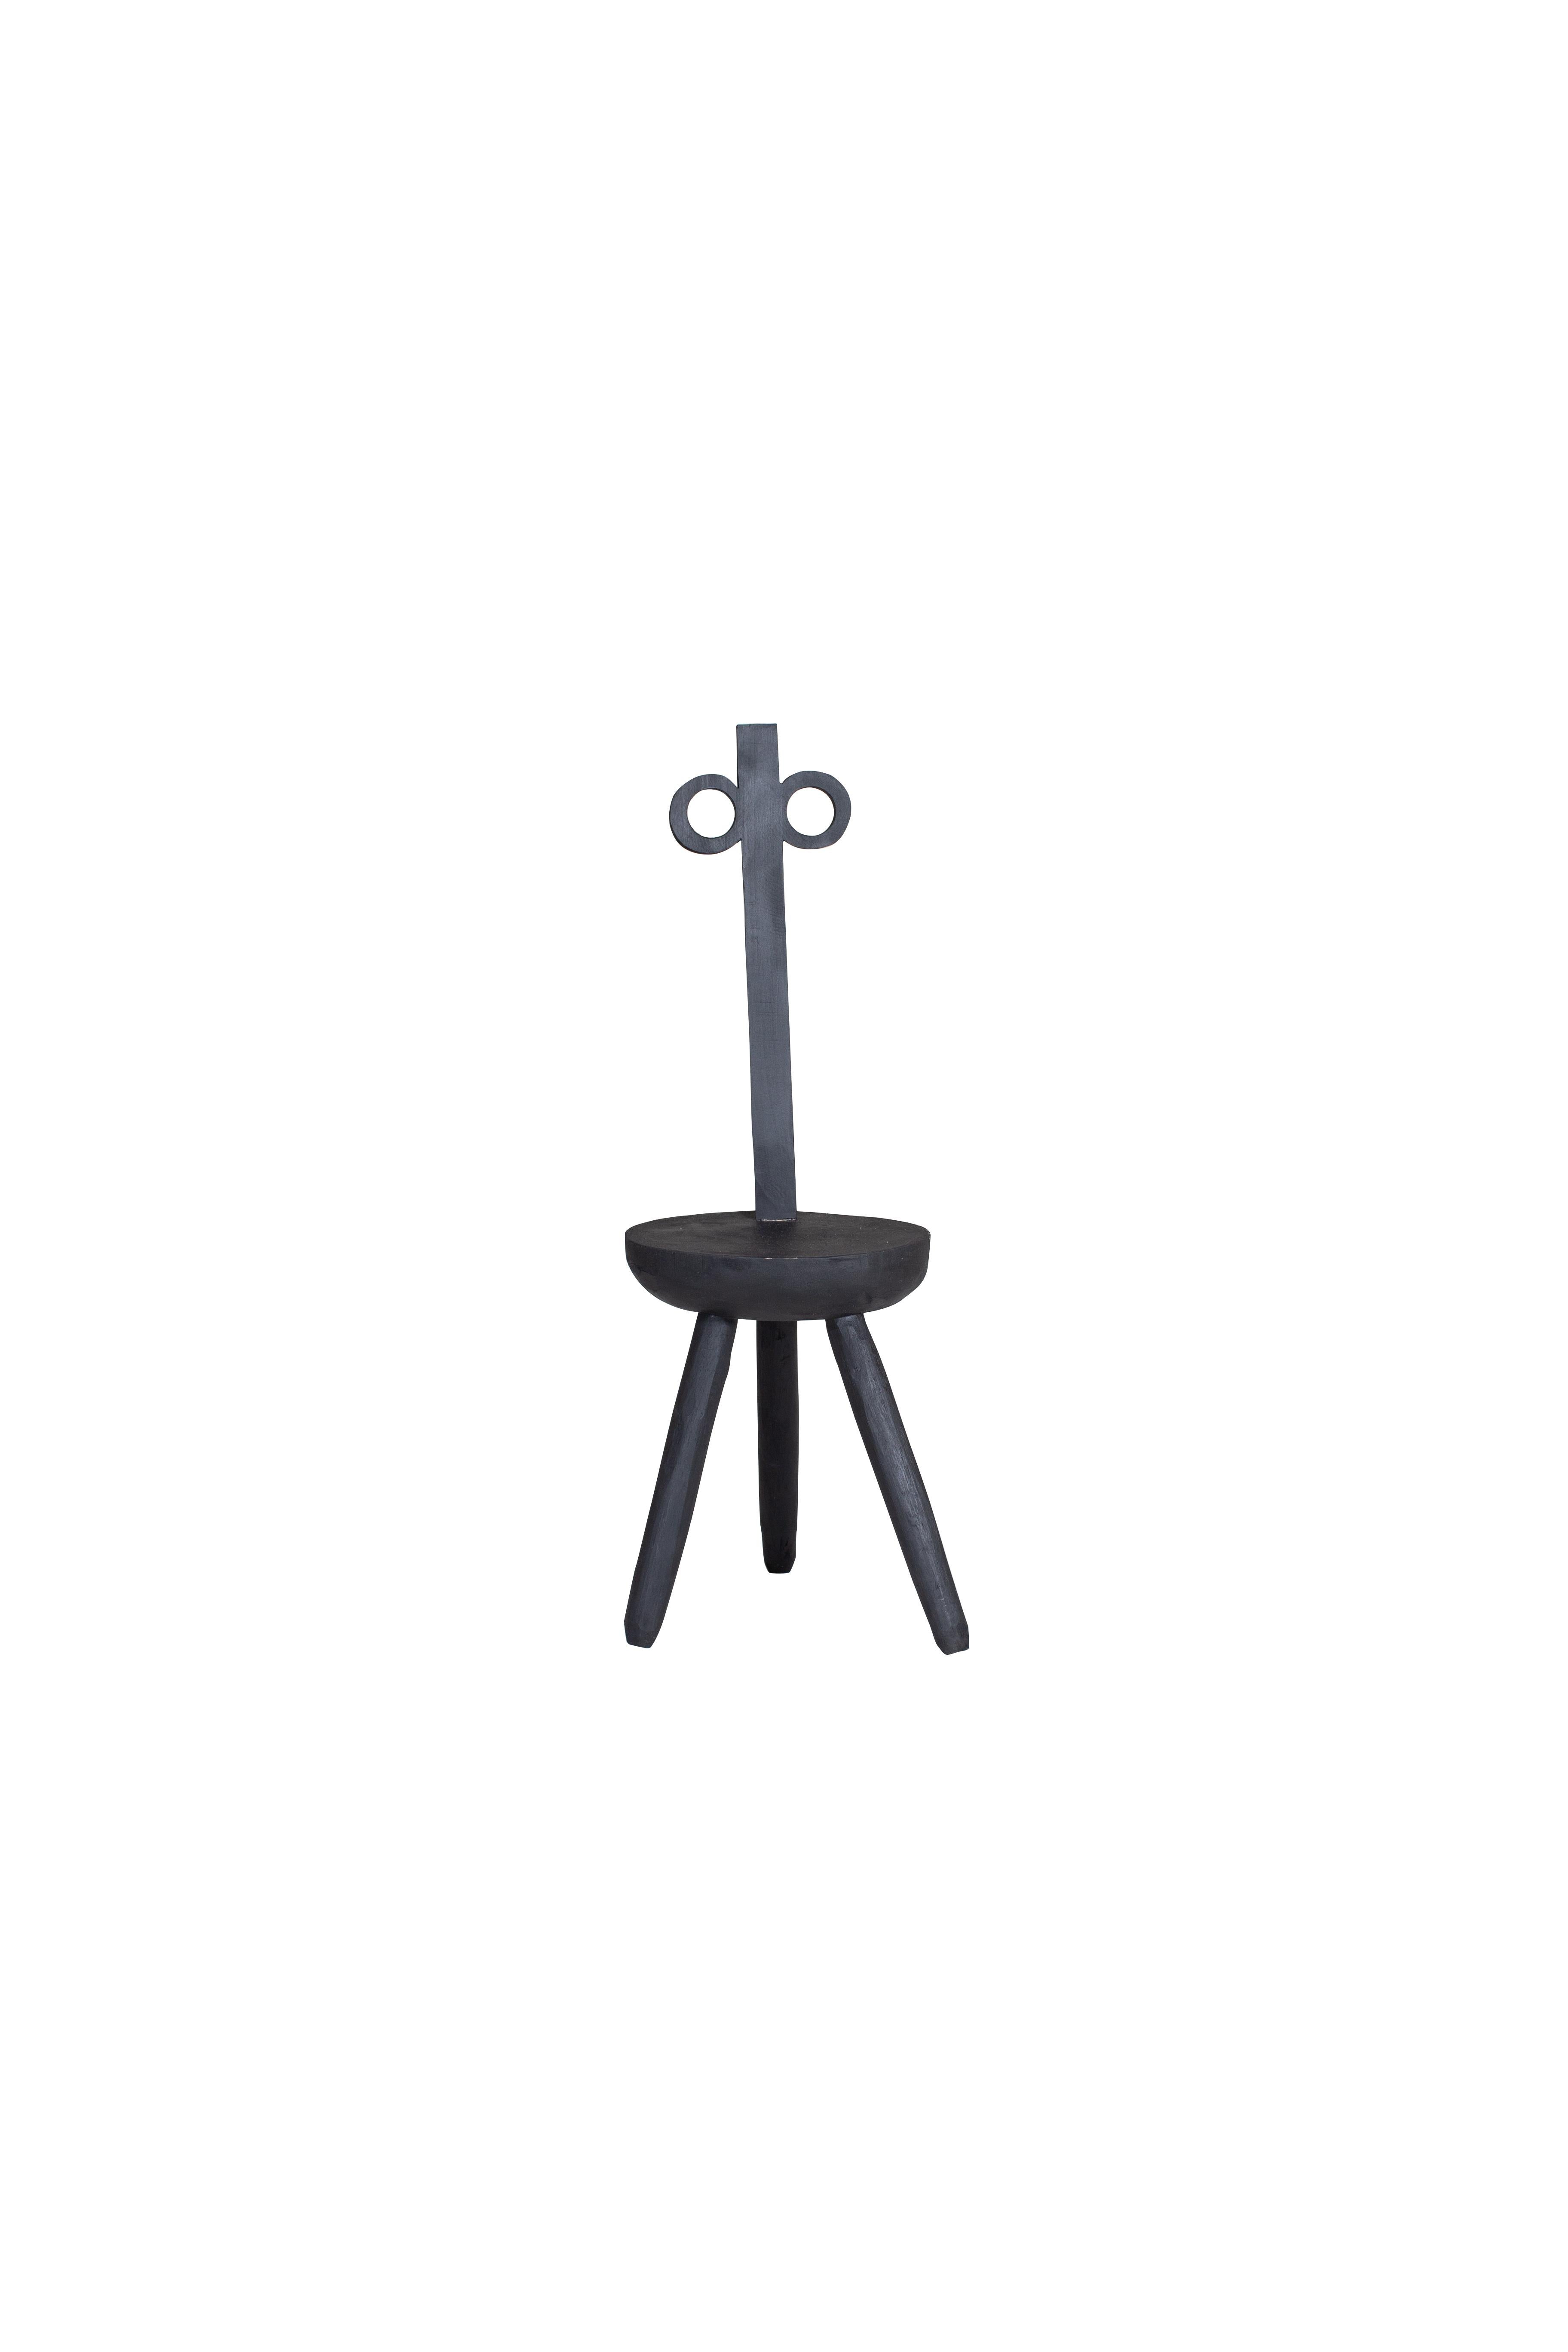 Morticia: schwarzer Stuhl von Pulpo
Entworfen von Vasilica lsacescu & Nadja Zerunian.
Abmessungen: T 30 x B 26 x H 95 cm.
MATERIALIEN: Holz.

Auch in Rosa erhältlich. Bitte kontaktieren Sie uns. 

SCHRECKLICH. WOODY. CRAFT.
Gestatten Sie